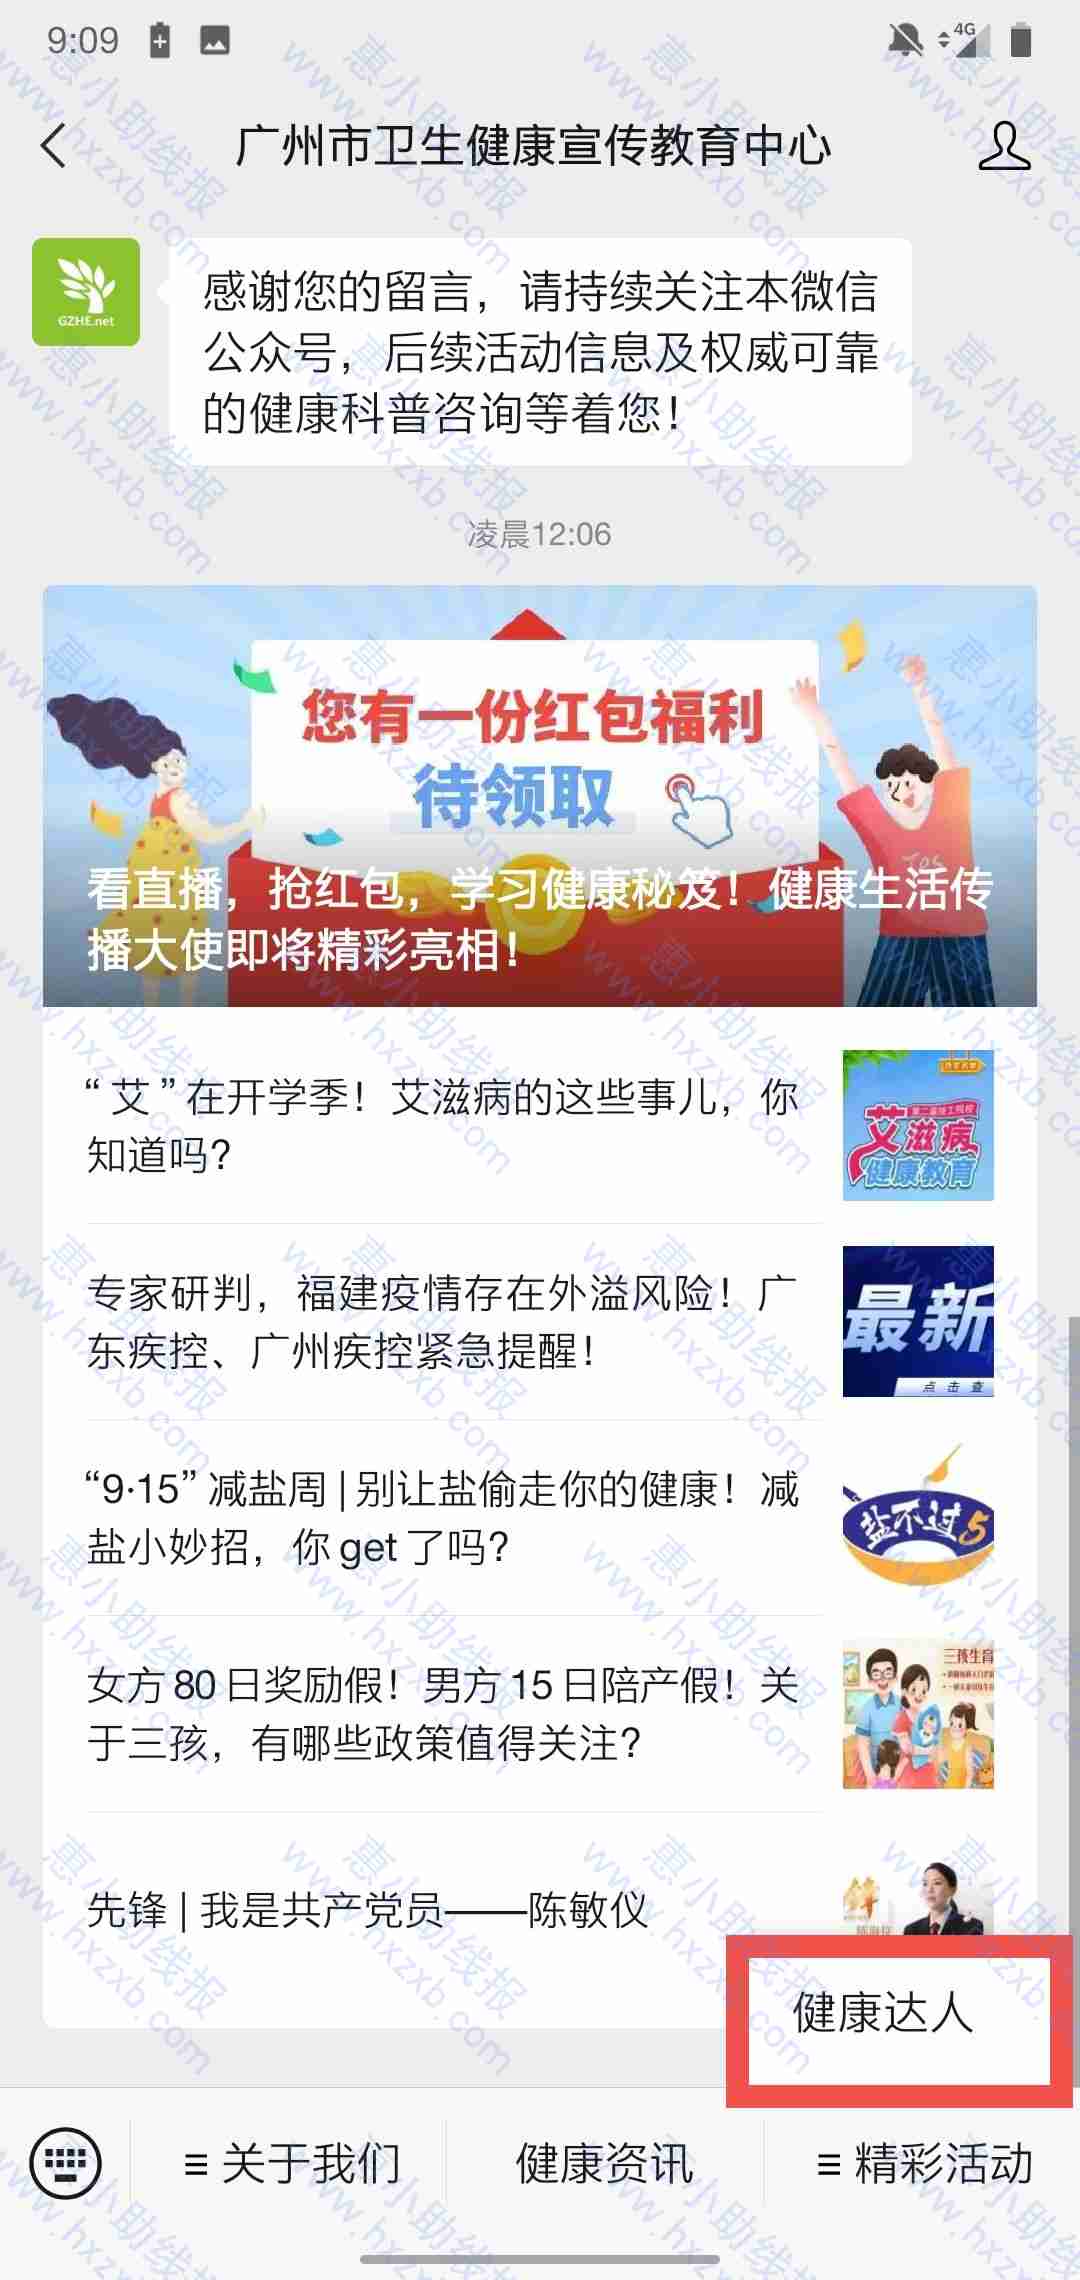 广州市卫生健康宣传教育中心看直播抽红包